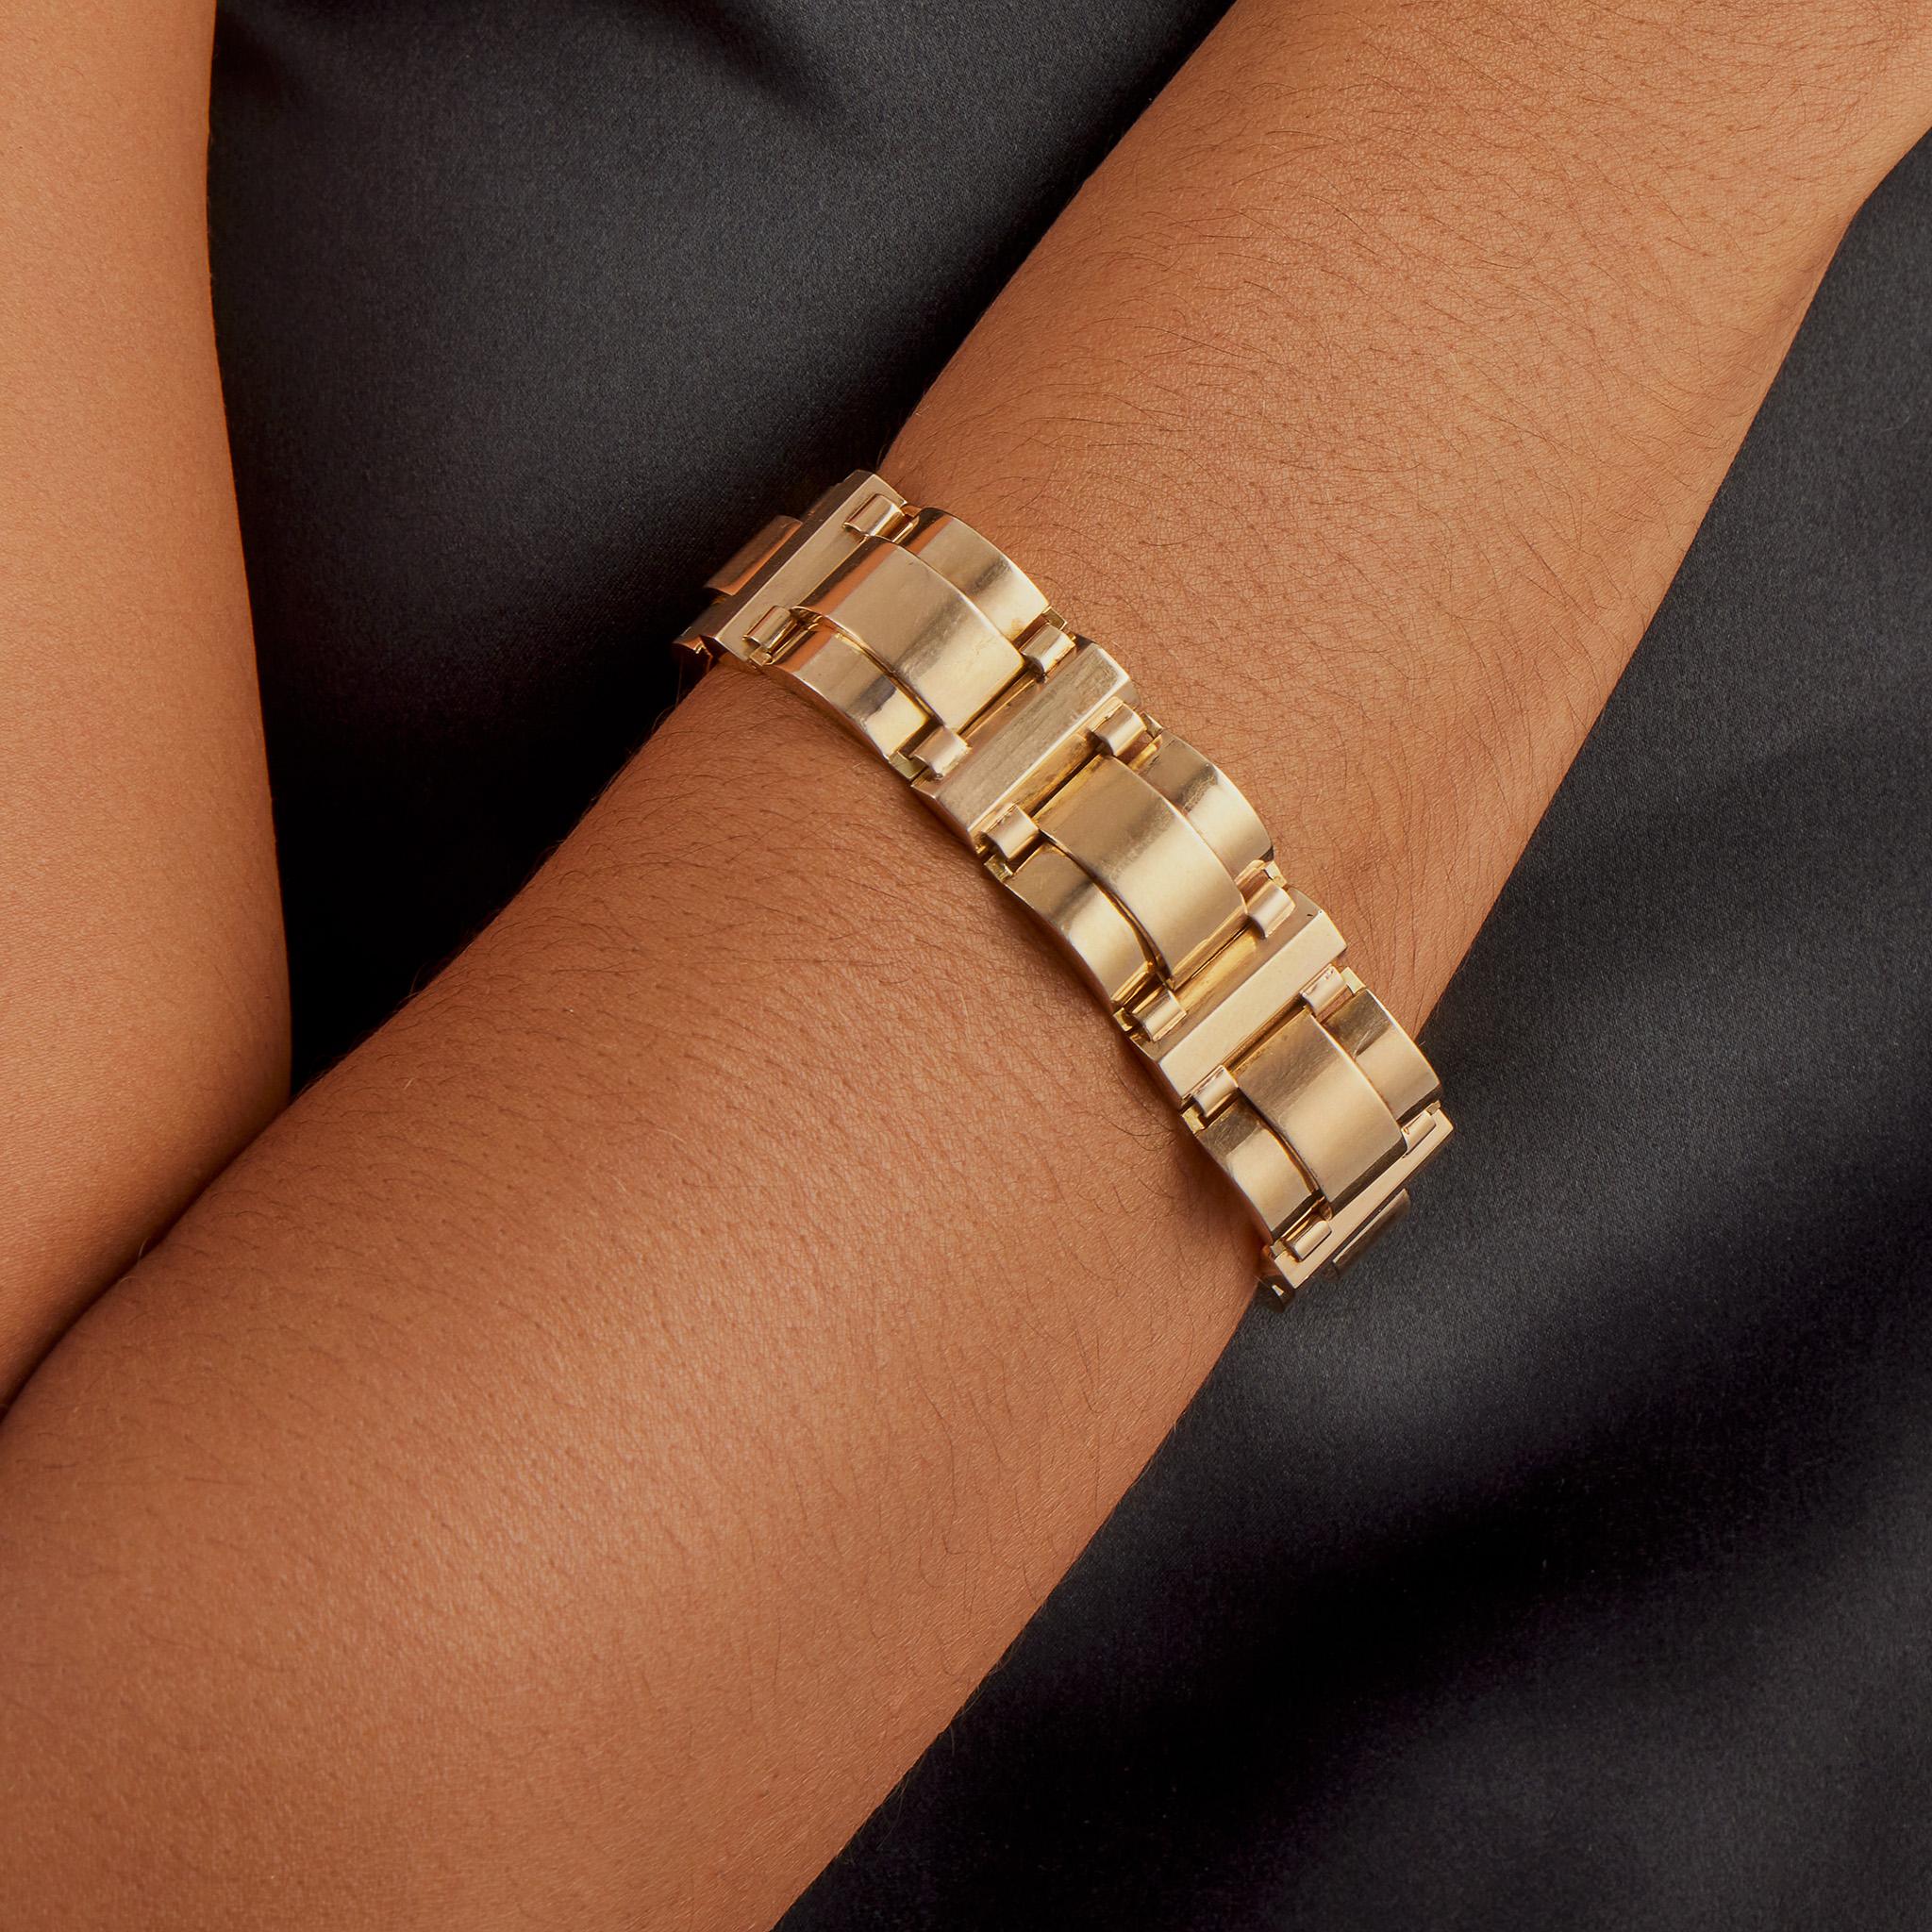 Dieses französische Retro-Armband von Renard, Paris, wurde in den 1940er Jahren entworfen und besteht aus 18 Karat Gold. Es besteht aus gewölbten und gestuften Bombé-Gliedern, die durch facettierte Stäbe verbunden sind. Mit seiner komplexen und